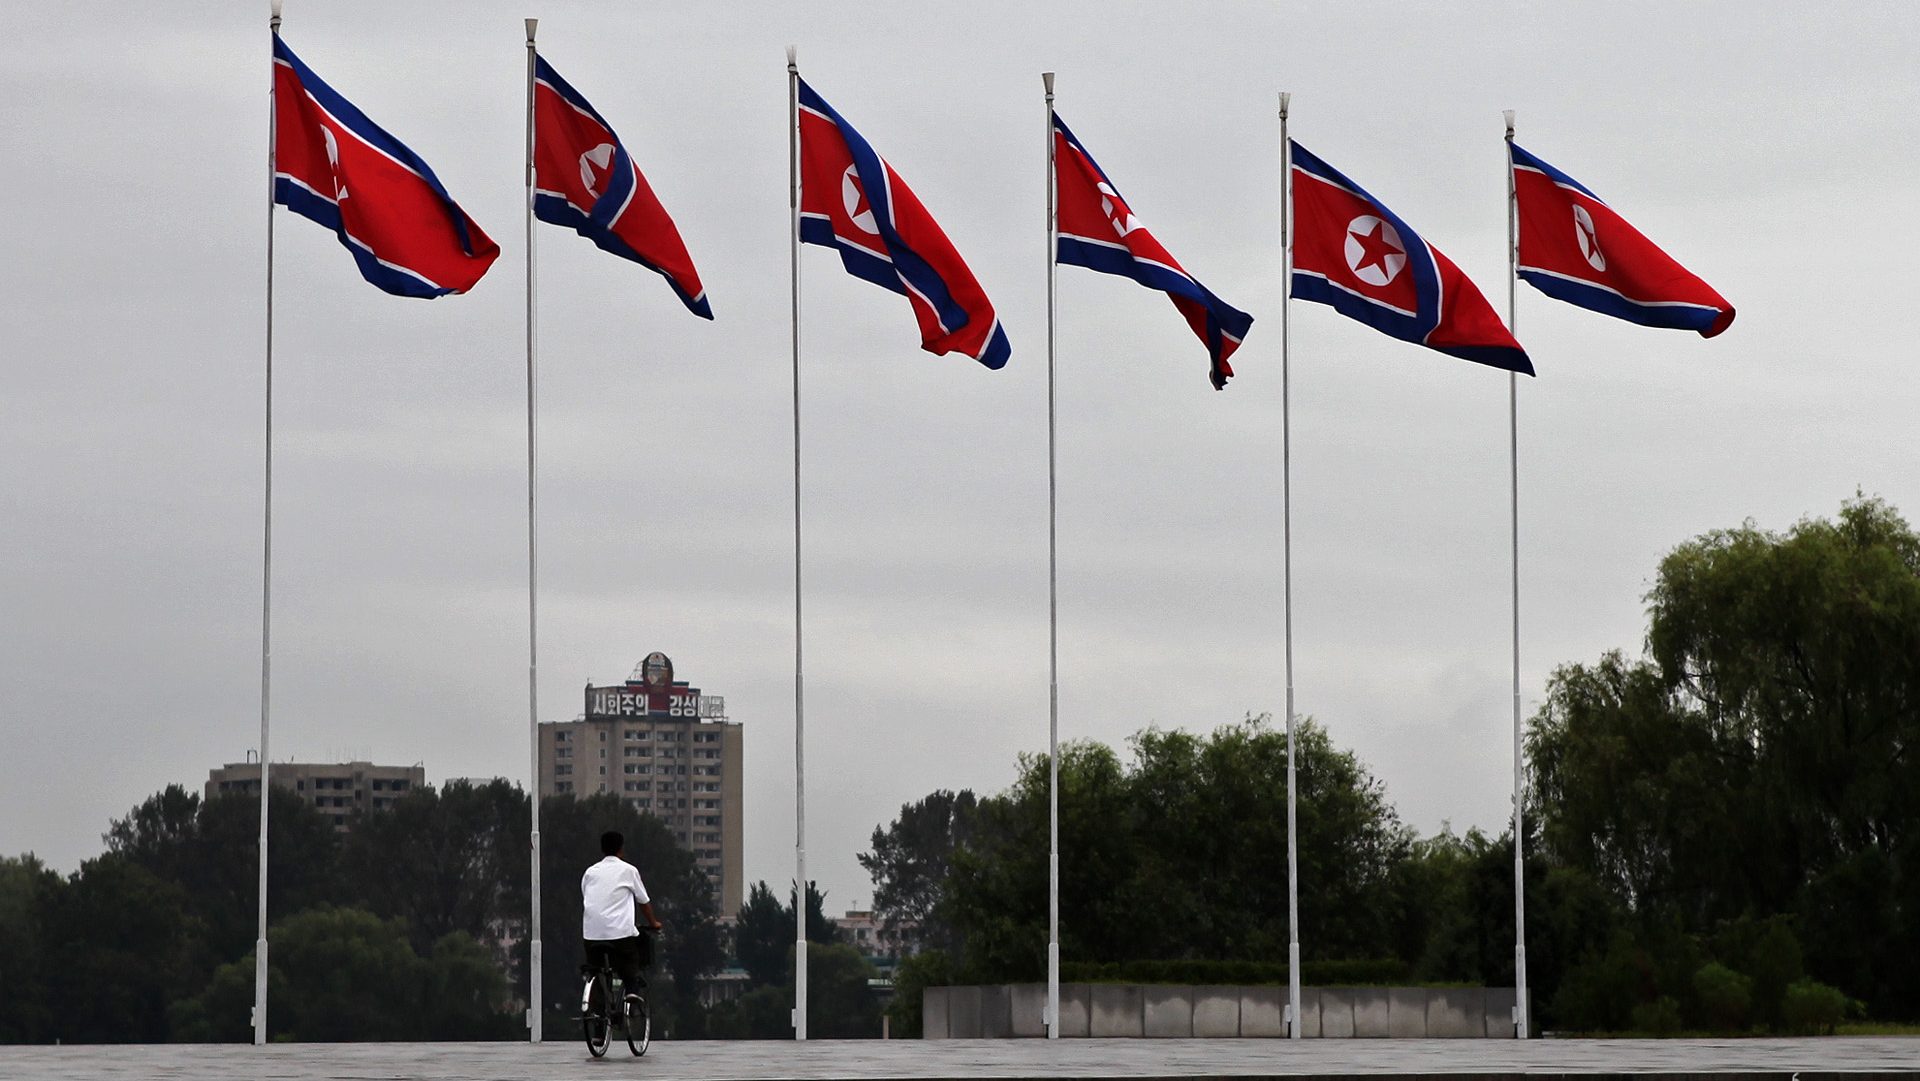 Flags of Korea flying on flag poles in Pyongyang, DPRK.